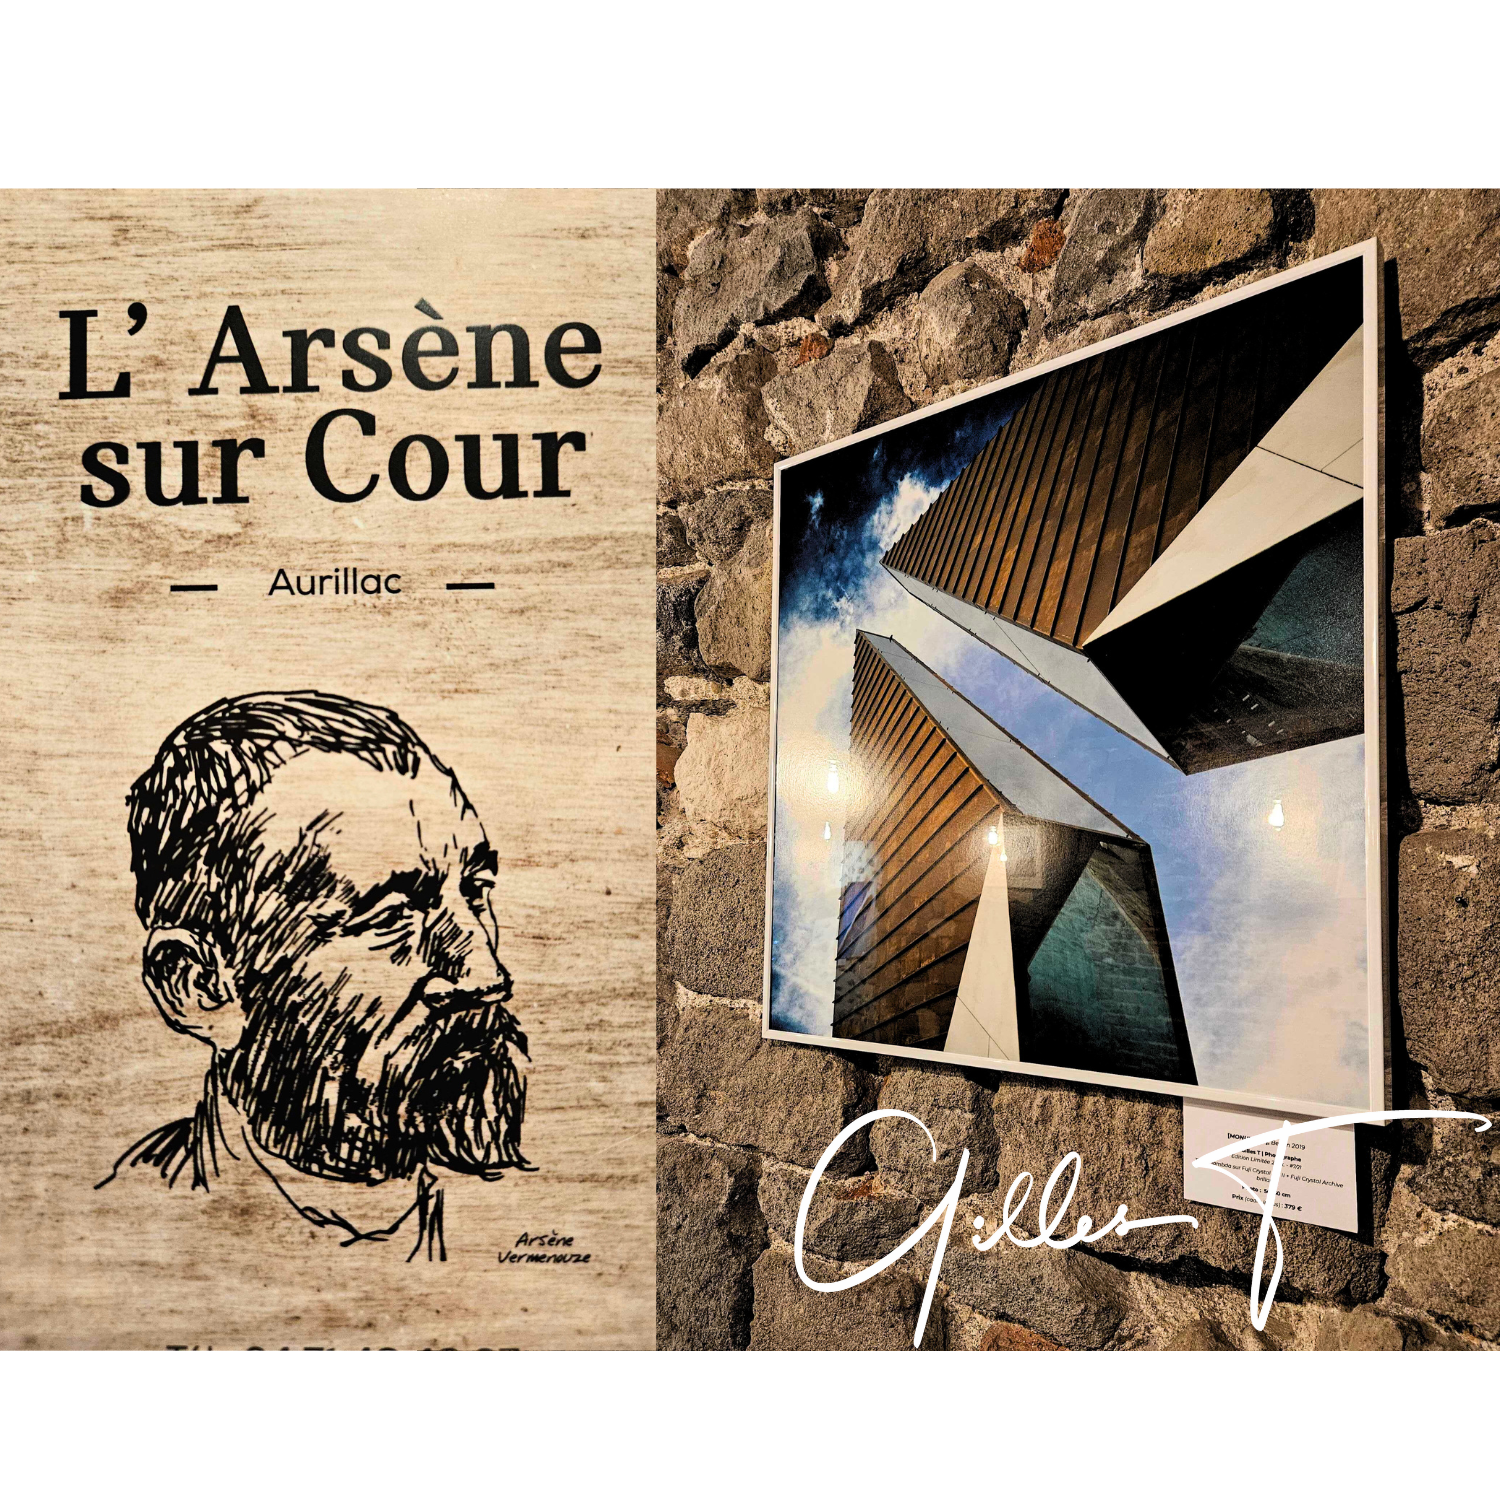 Restaurant Arsène sur Cour, Aurillac, exposition artiste Gilles Thouvenin, cantal art